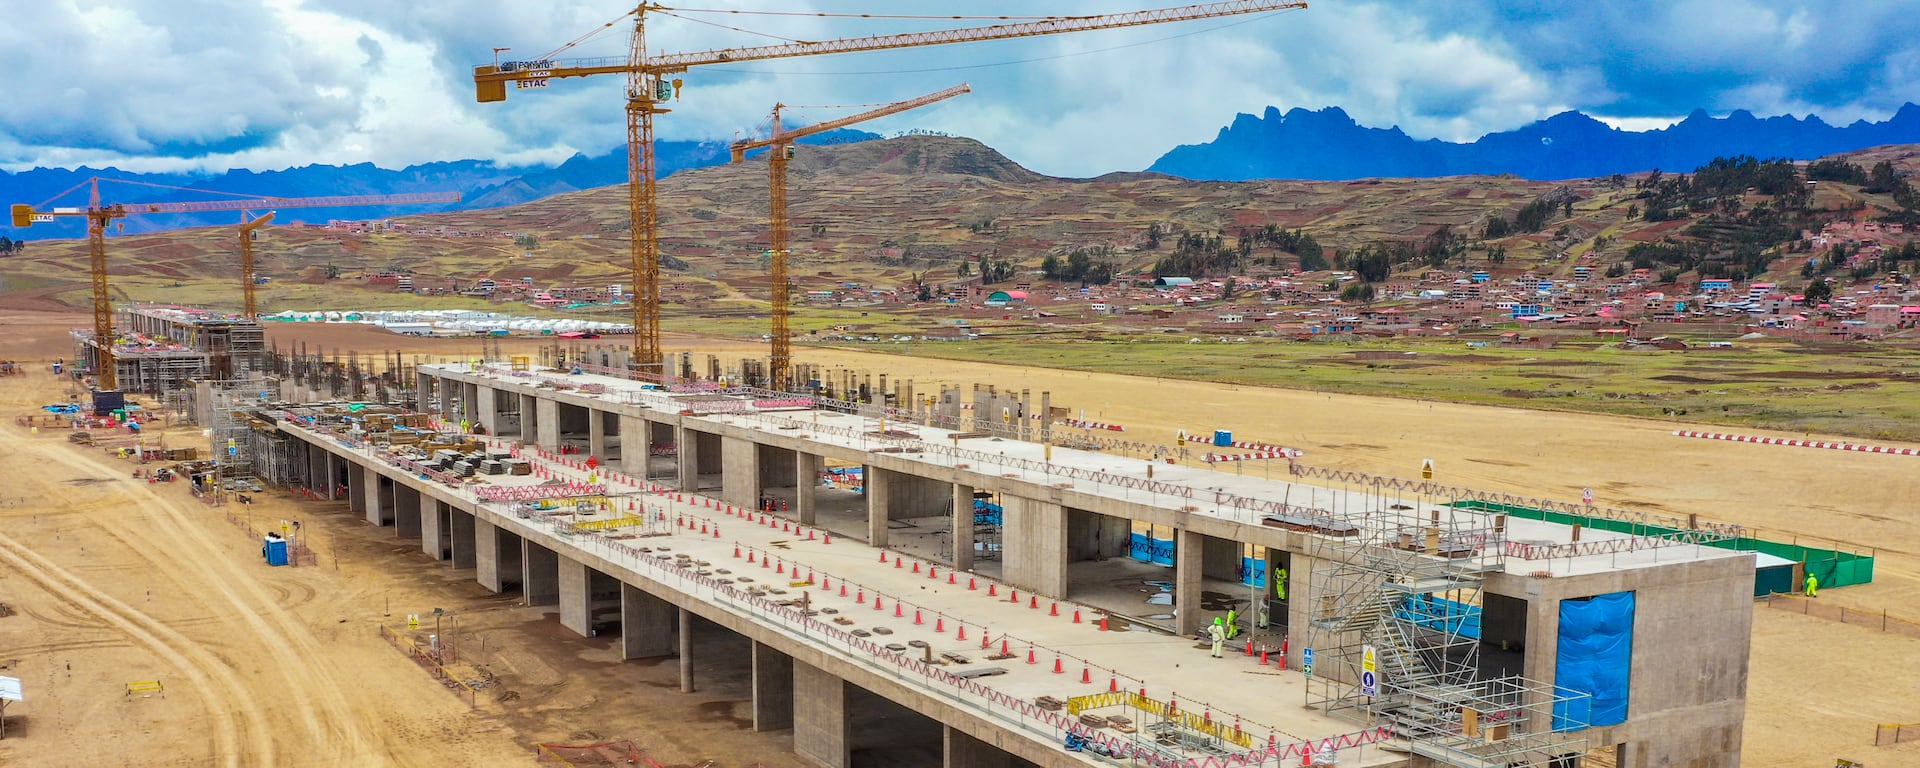 Aeropuerto de Chinchero: a una década de iniciado el proyecto se ha avanzado 12 % en obras principales 